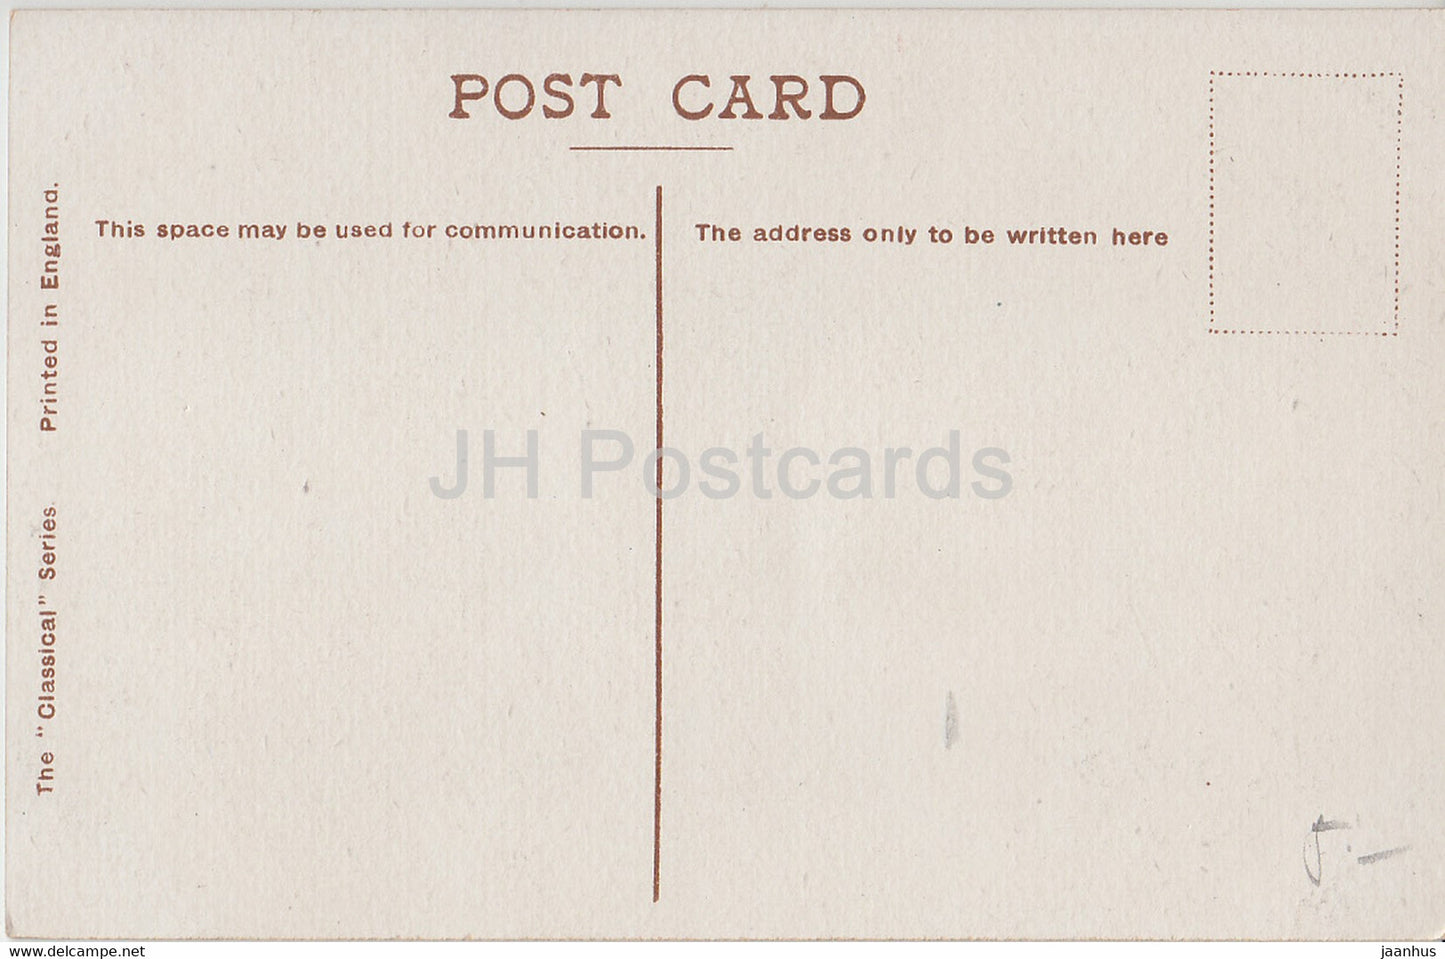 London – Bank of England &amp; Royal Exchange – Autos – alte Postkarte – England – Vereinigtes Königreich – unbenutzt